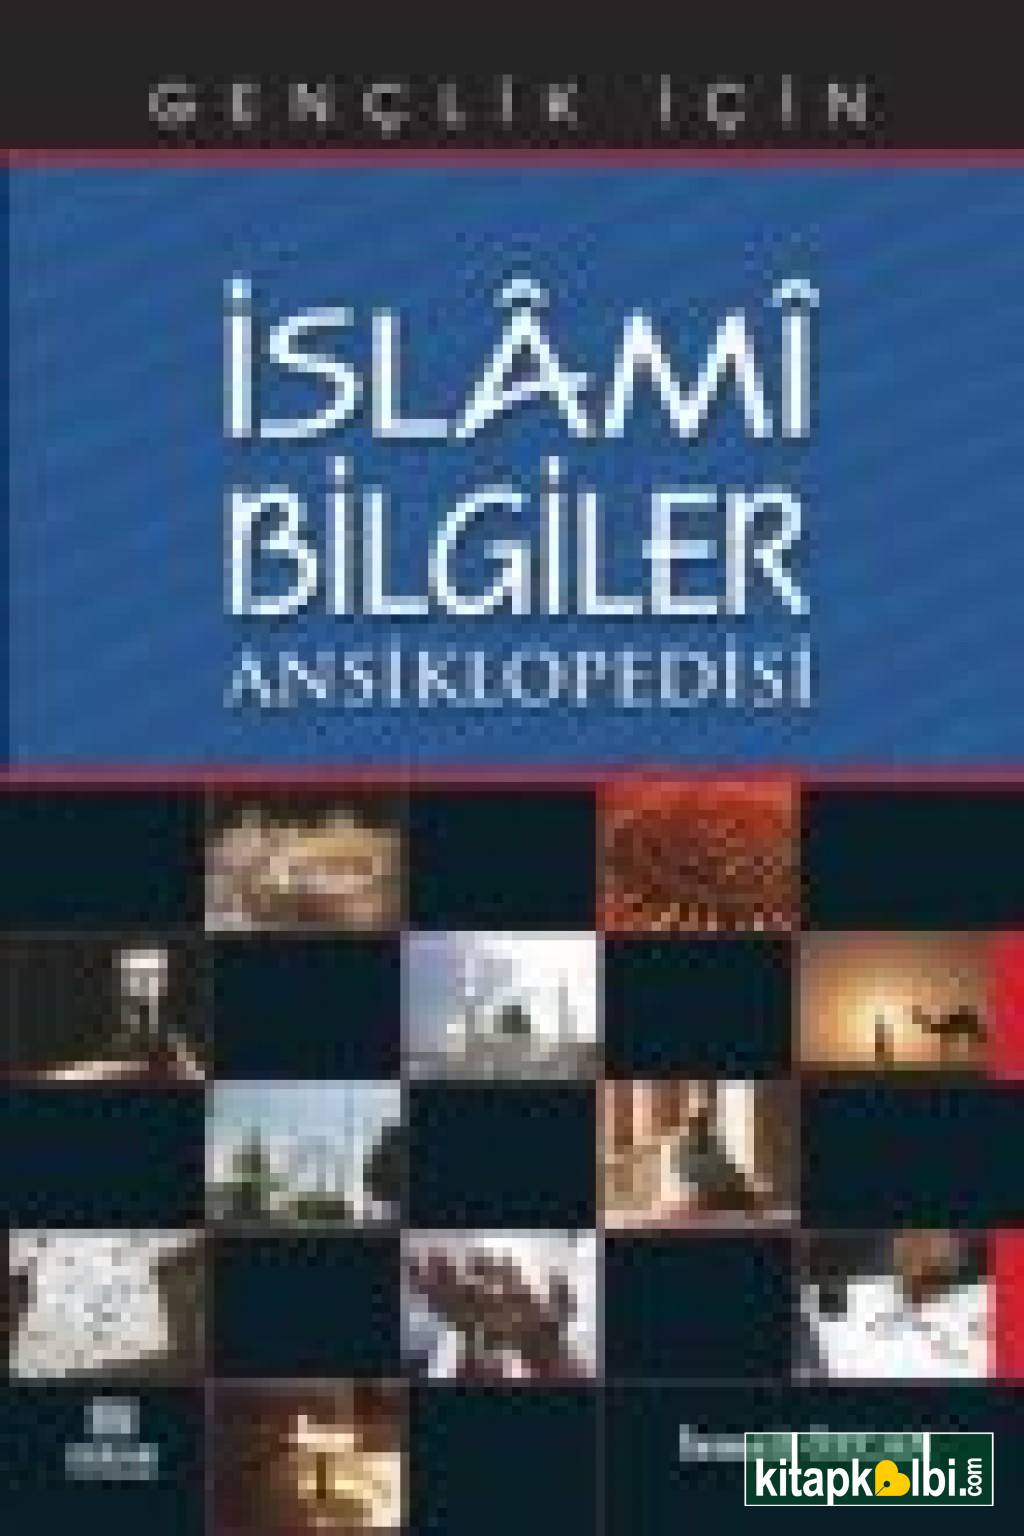 İslami Bilgiler Ansiklopedi